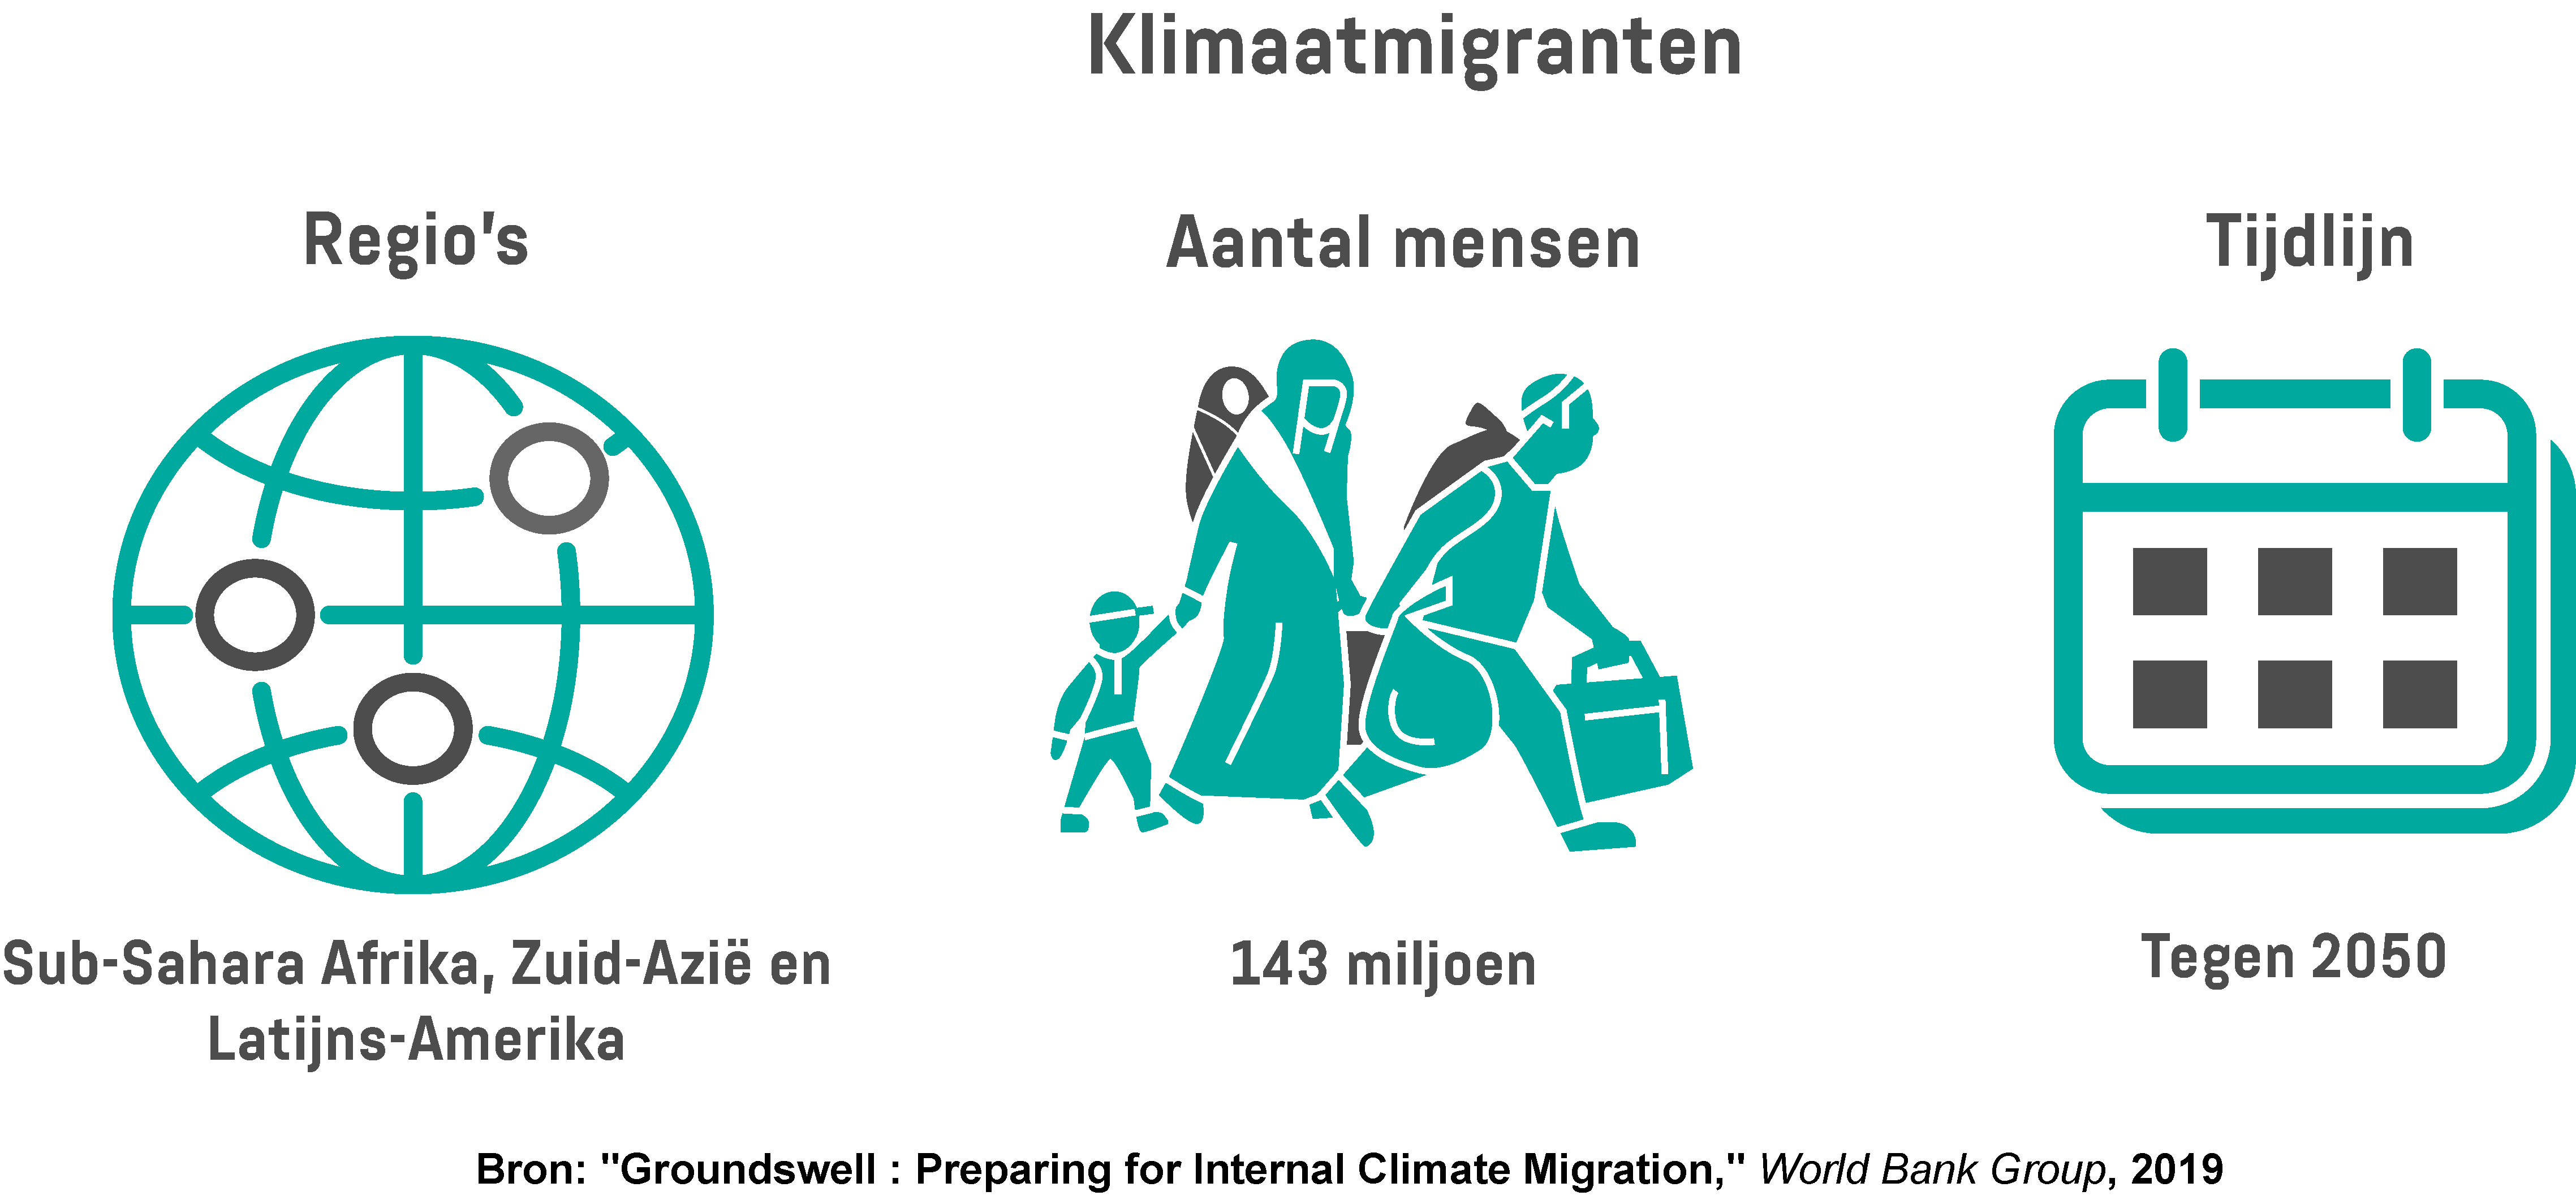 Infographic toont het aantal mensen dat het risico loopt getroffen te worden door klimaatmigratie en welke regio's tegen 2050 de grootste klimaatmigratie zouden kunnen meemaken.